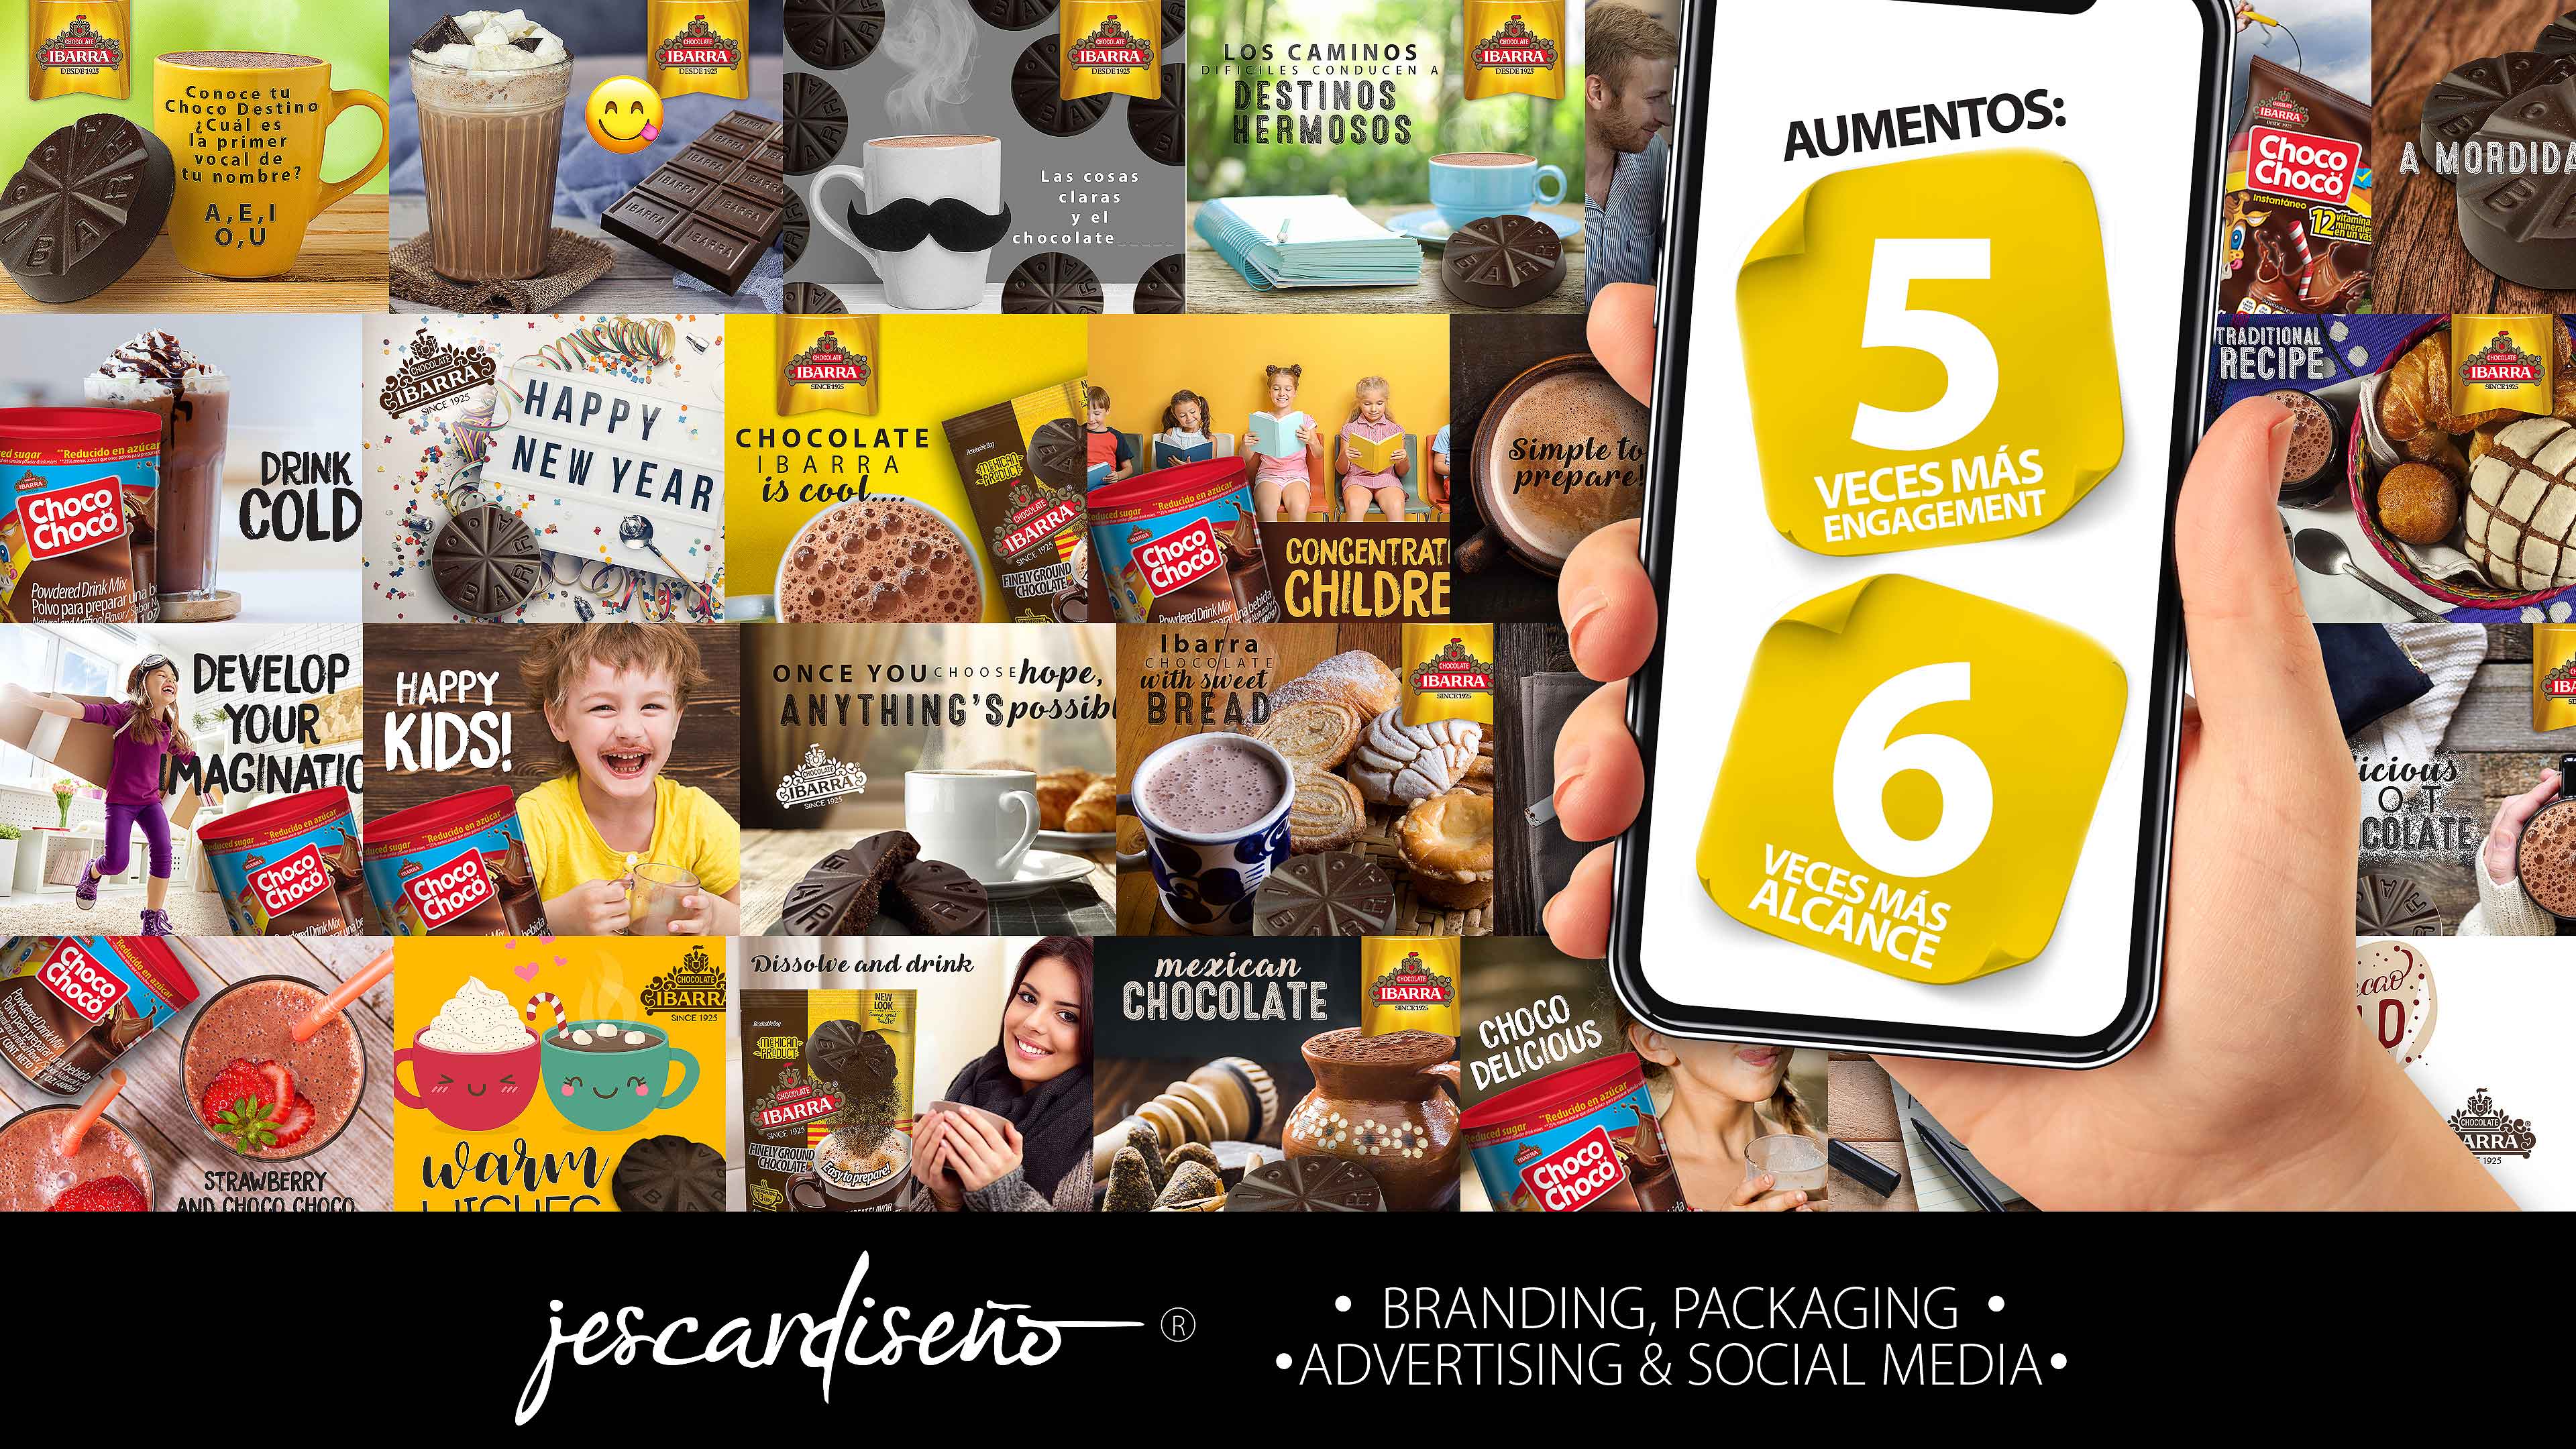 ibarra socialmedia packaging branding jescardiseno portafolio c